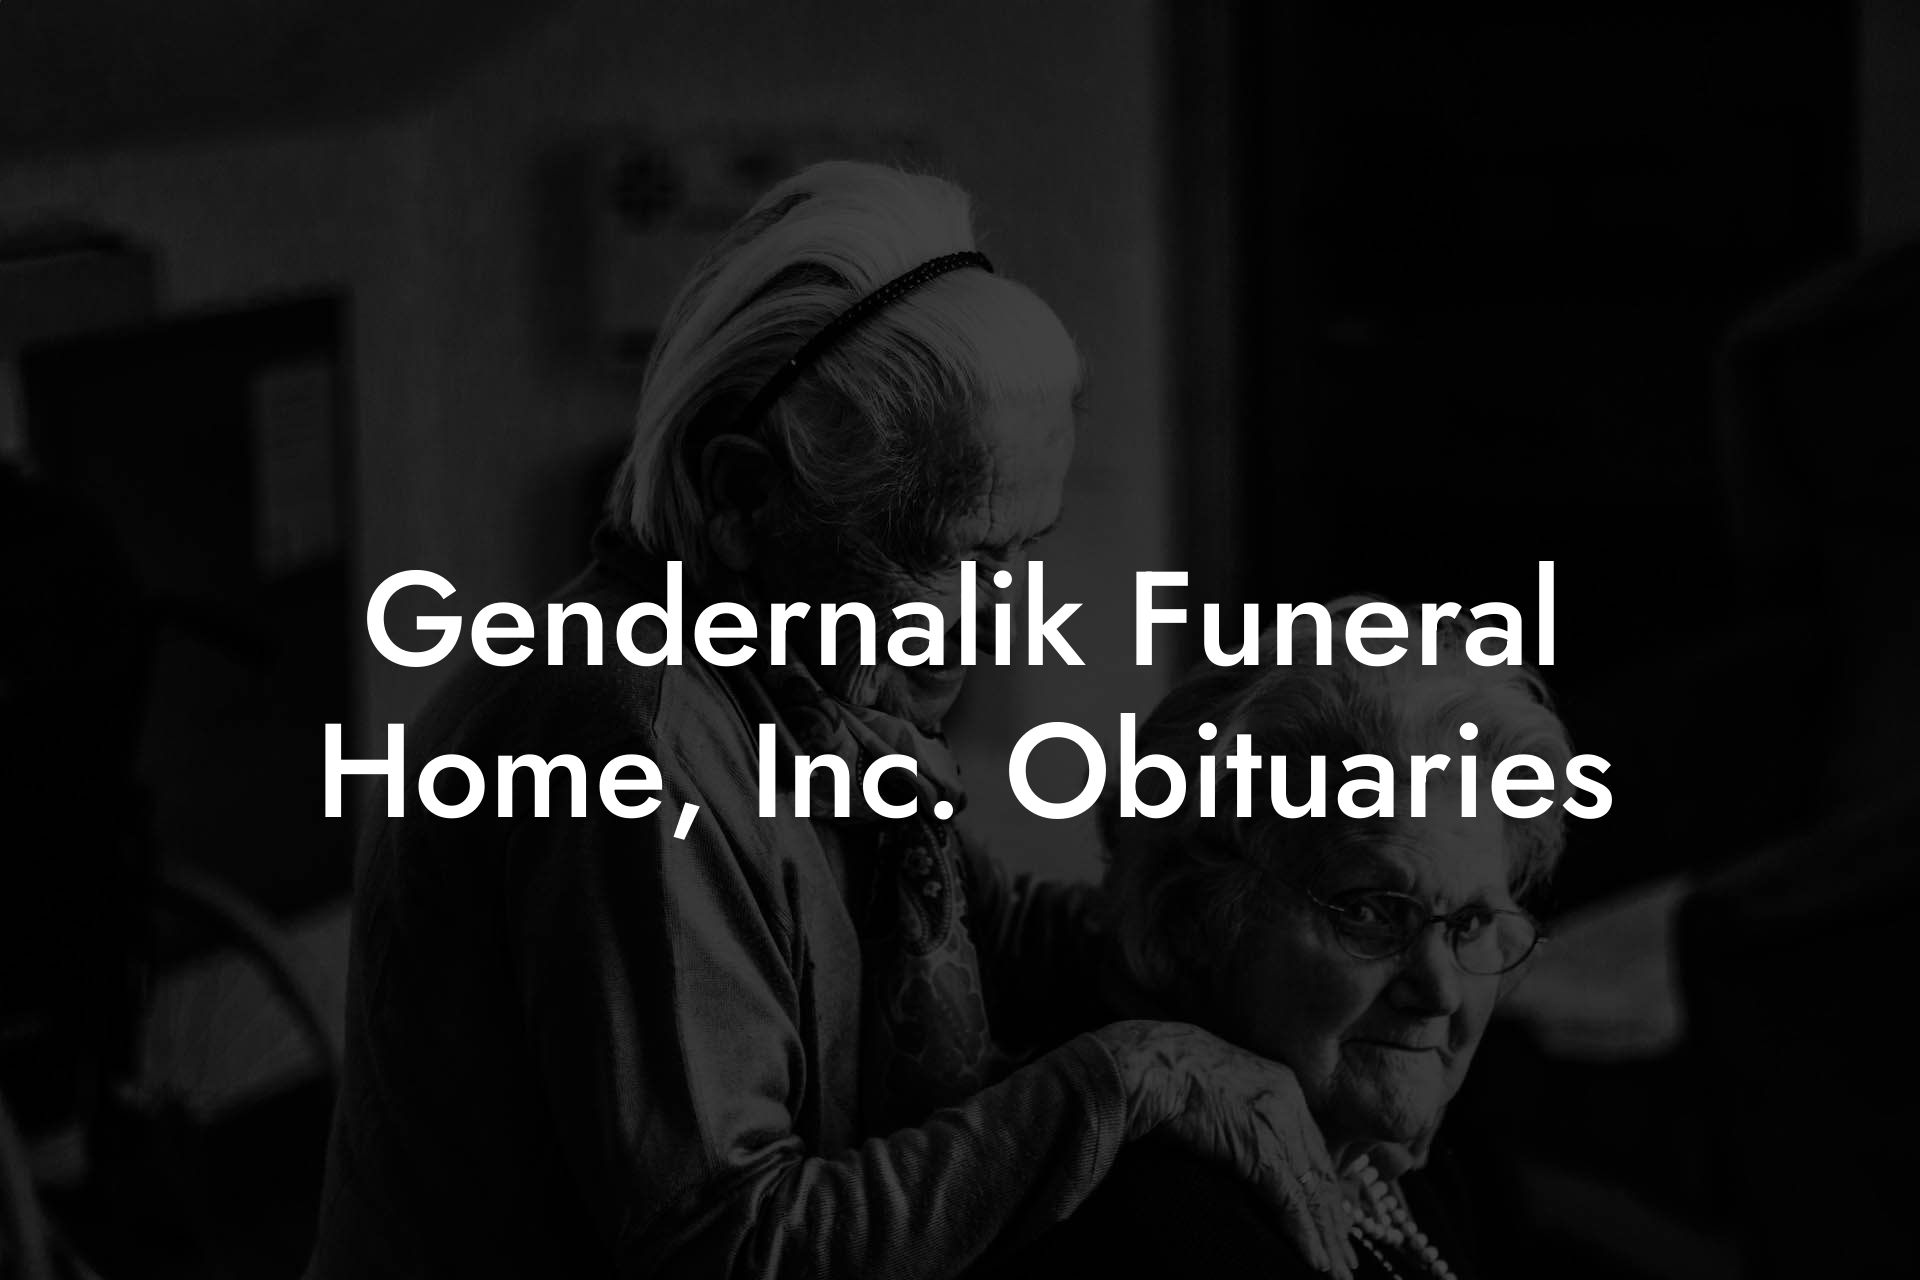 Gendernalik Funeral Home, Inc. Obituaries